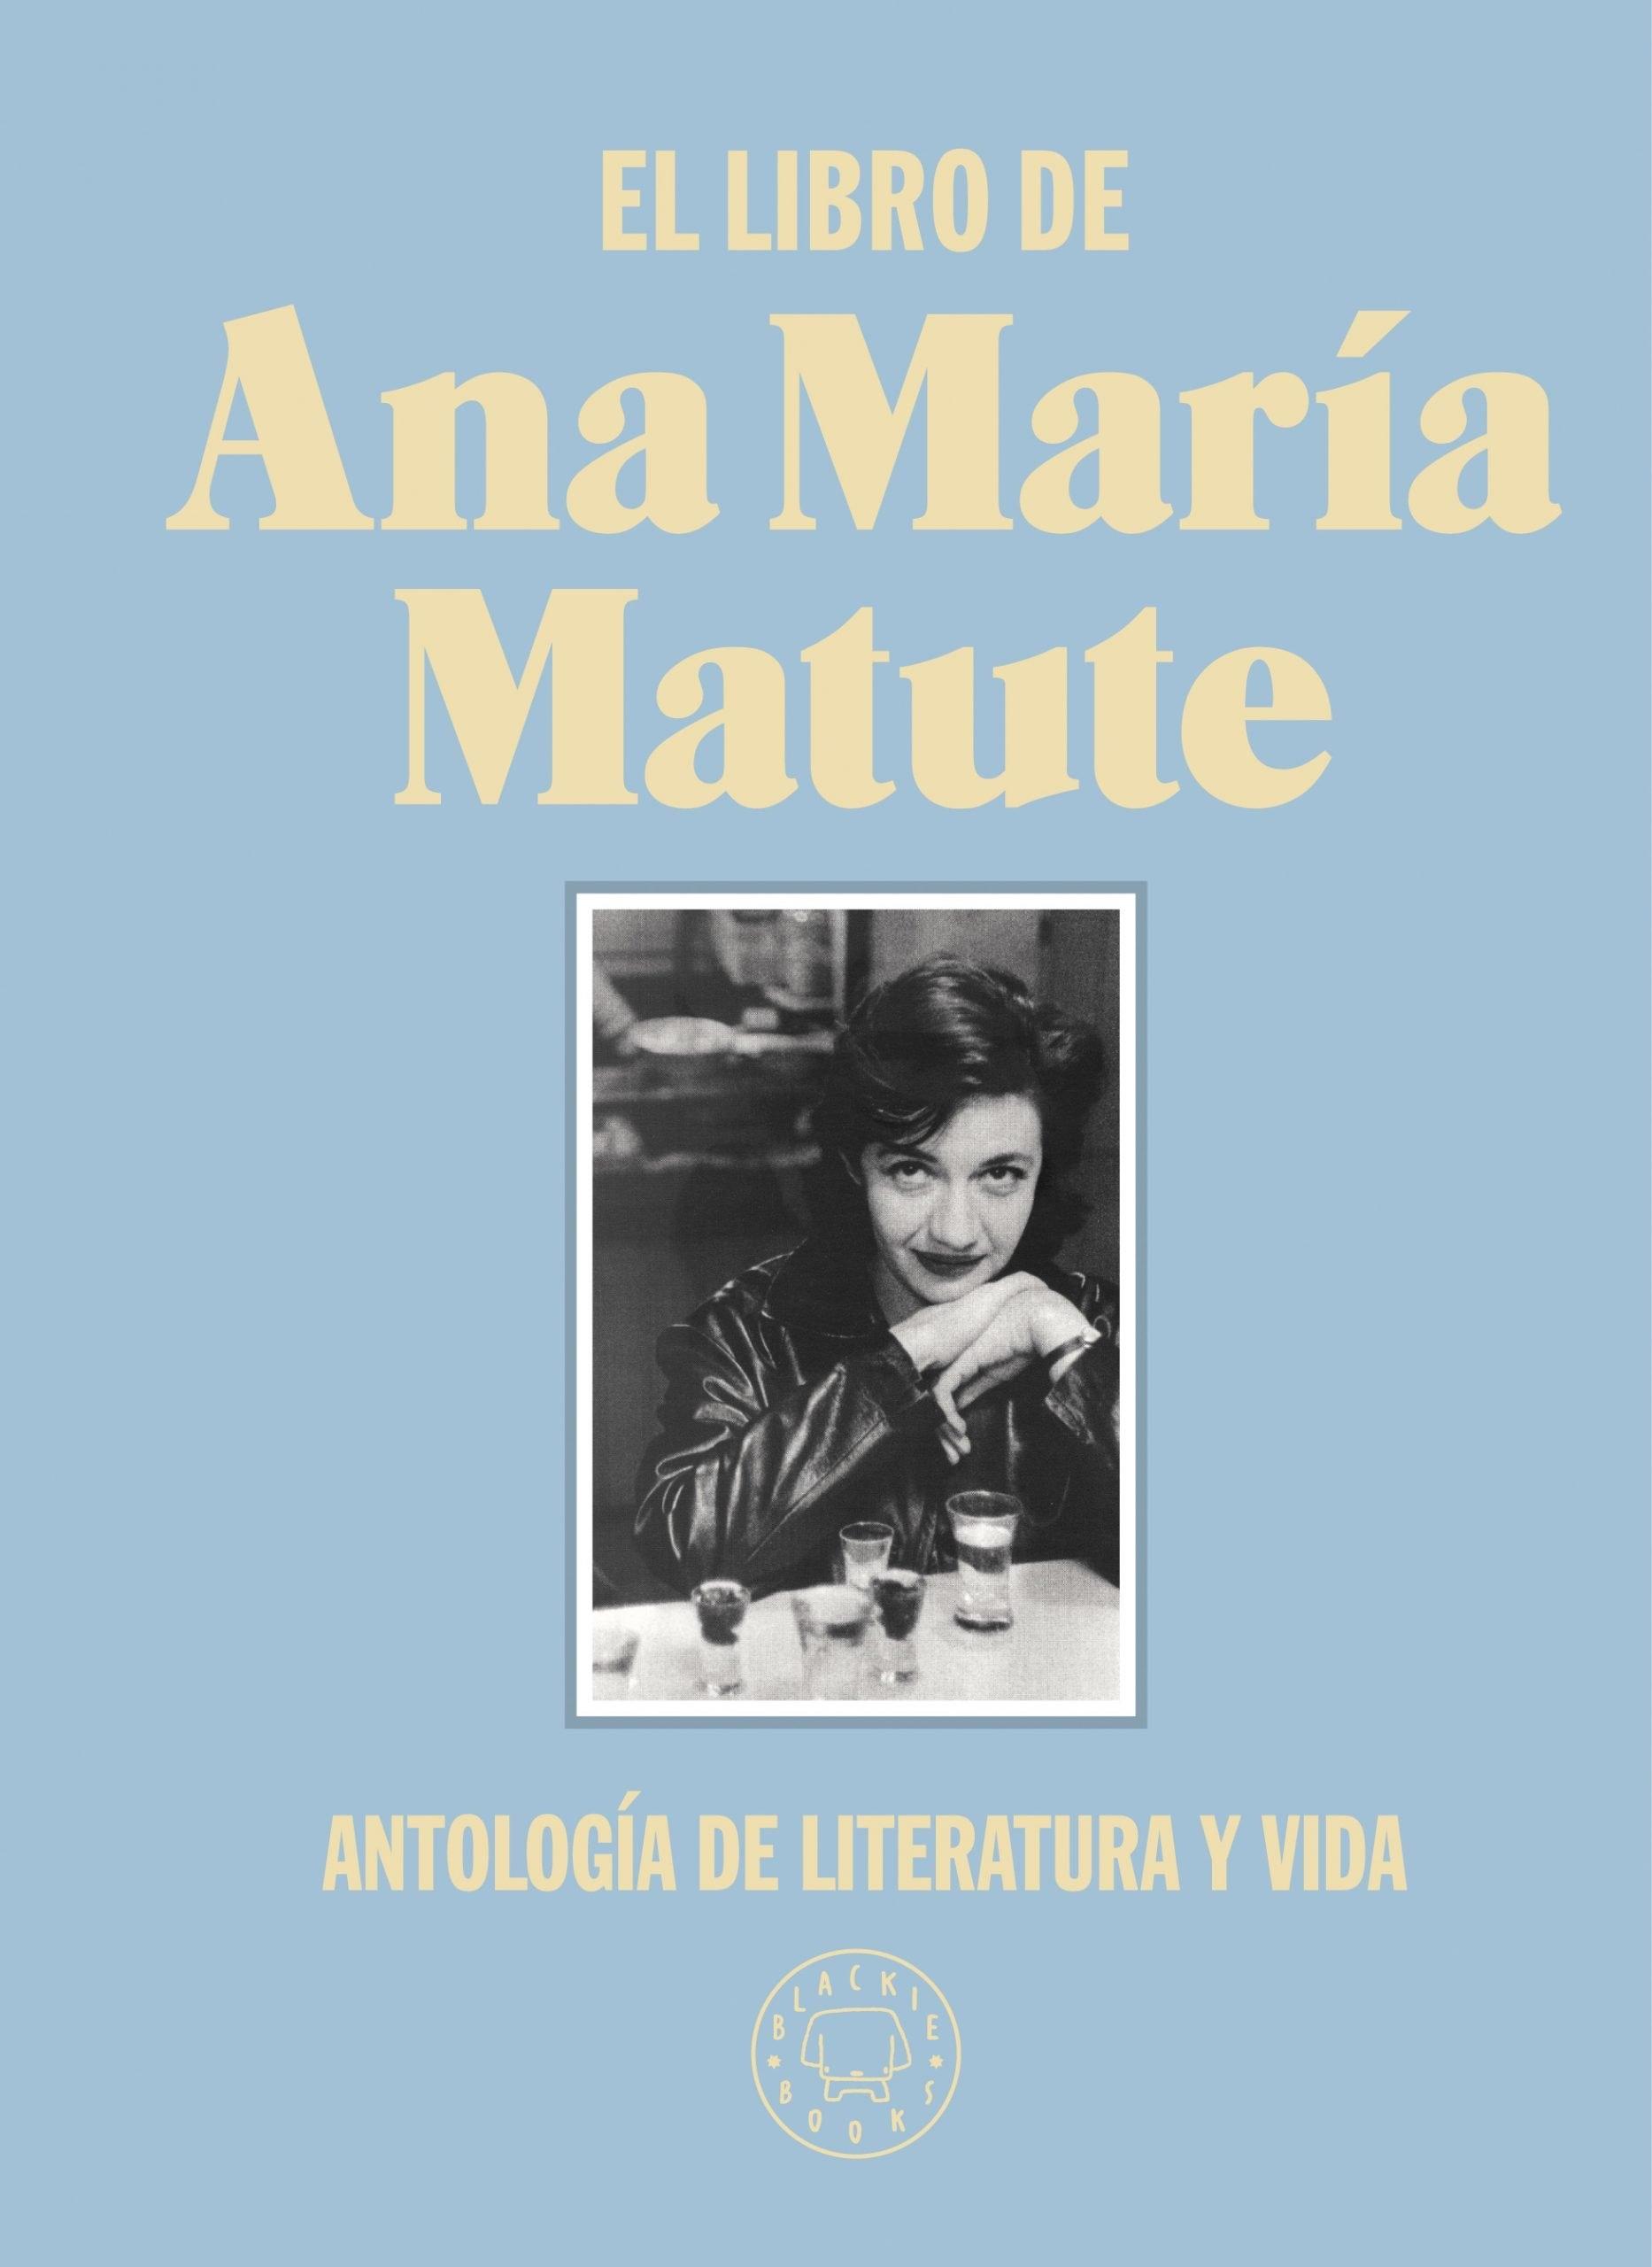 El Libro de Ana María Matute "Antología de Literatura y Vida"